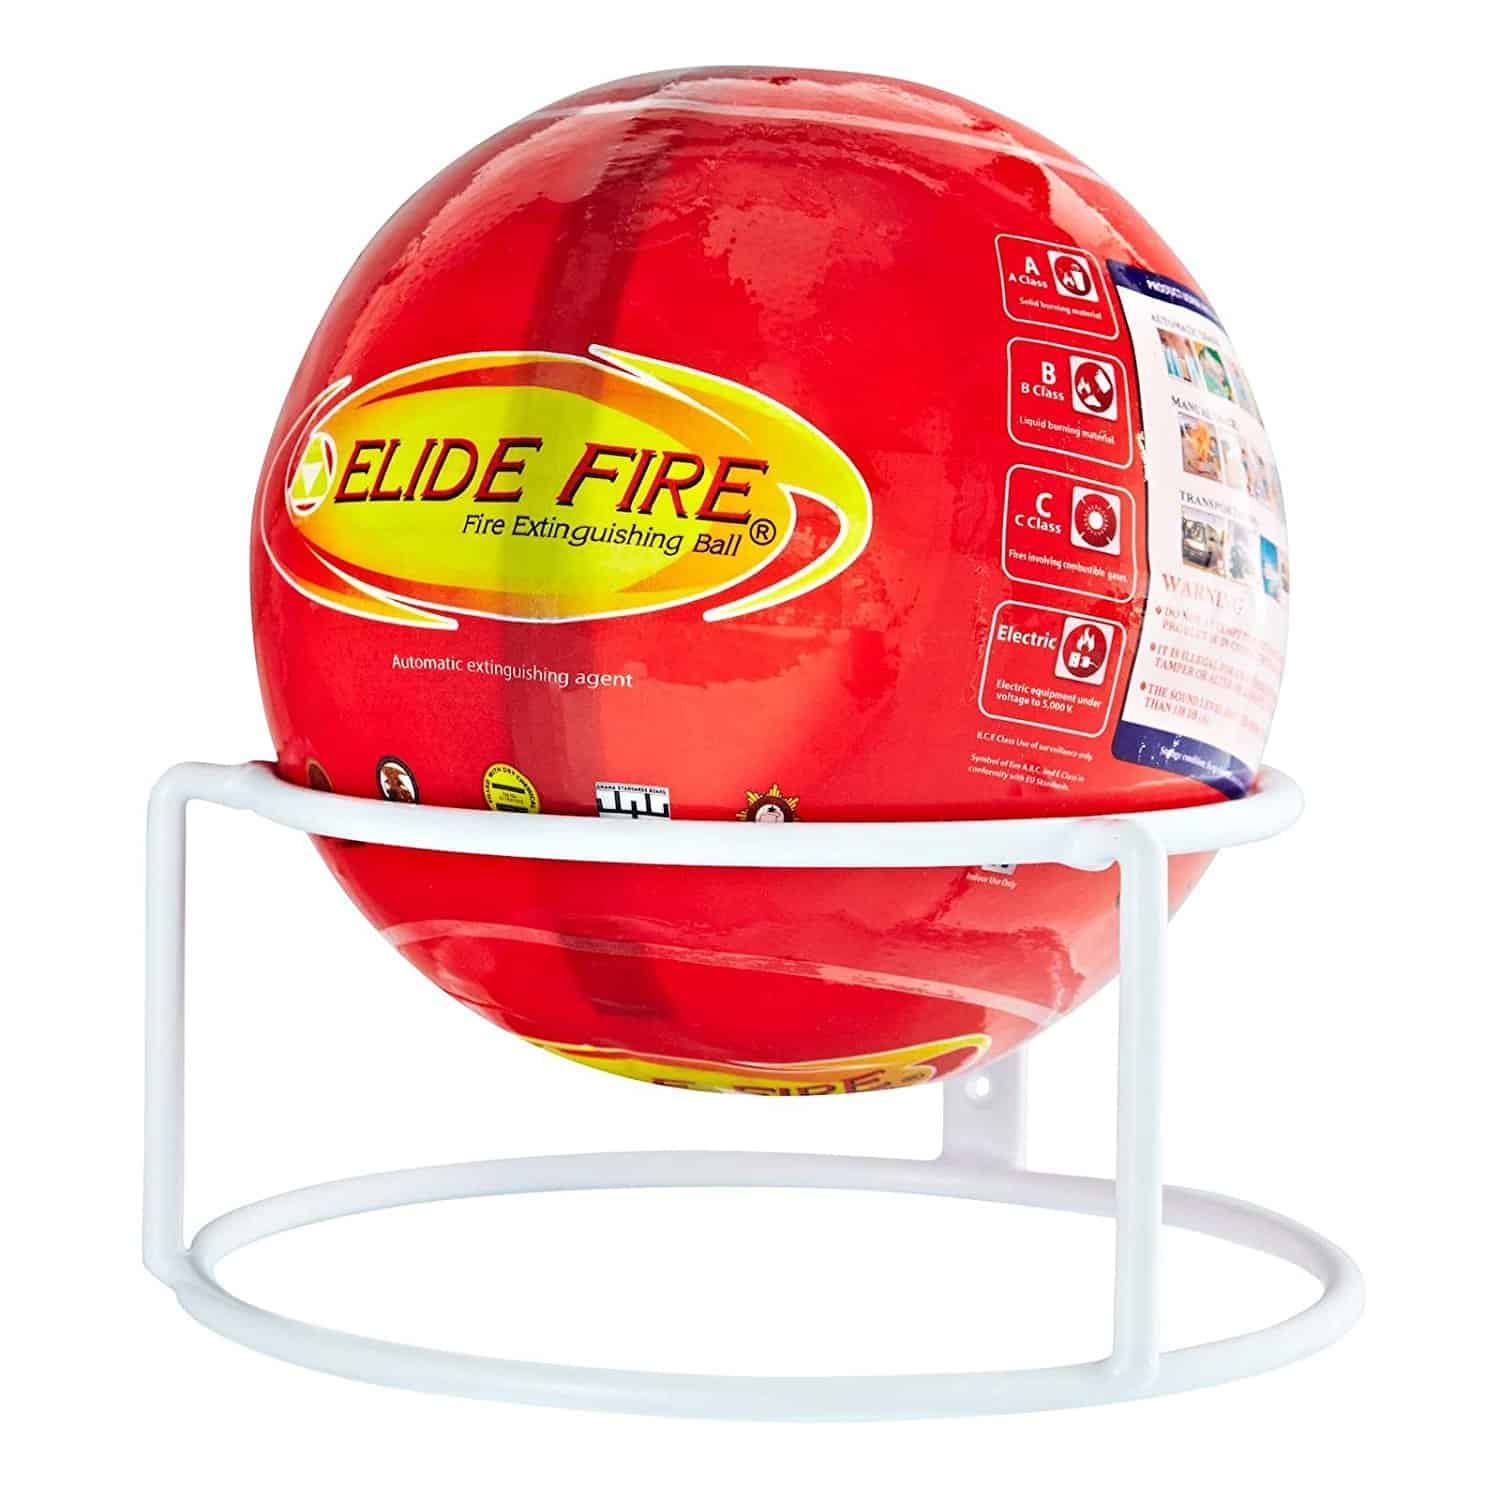 La boule d'extinction Elide Fire est basée sur une technologie révolutionnaire qui fournit des solutions bien plus avancées que les extincteurs portatifs